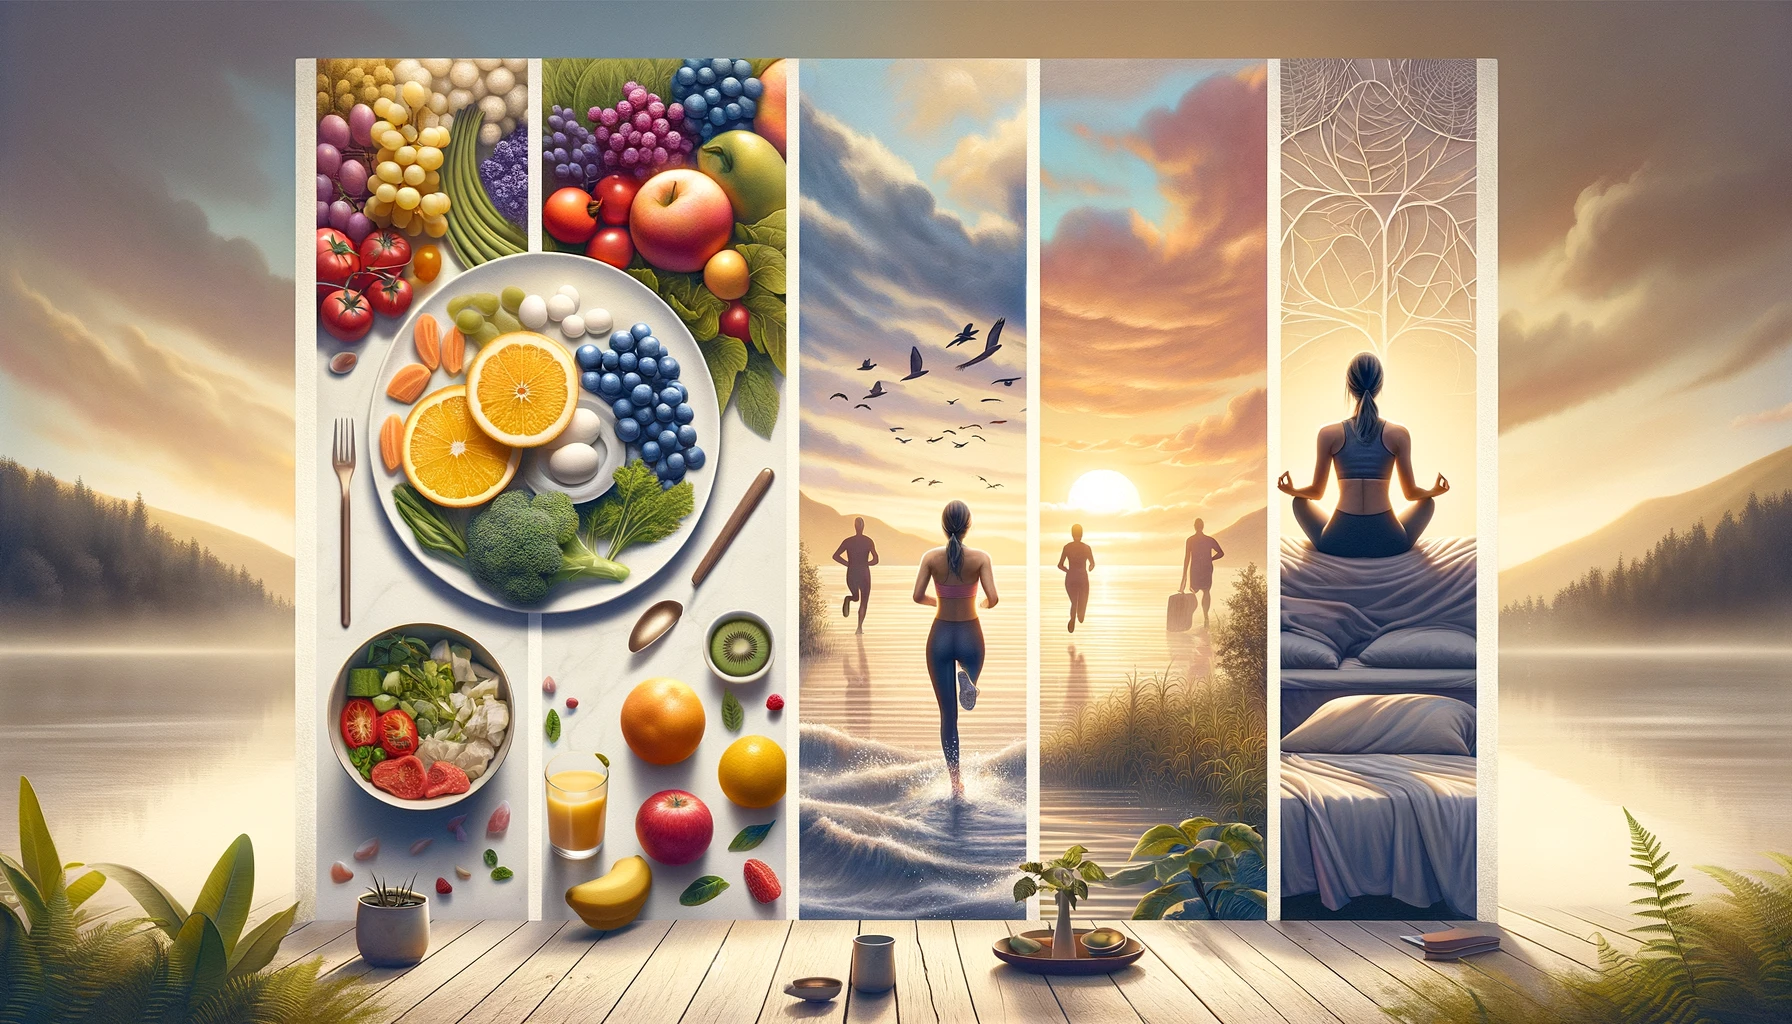 Quatro pilares de uma vida saudável: jejum intermitente, comida saudável, atividade física e meditação, em estilo hiper-realista.